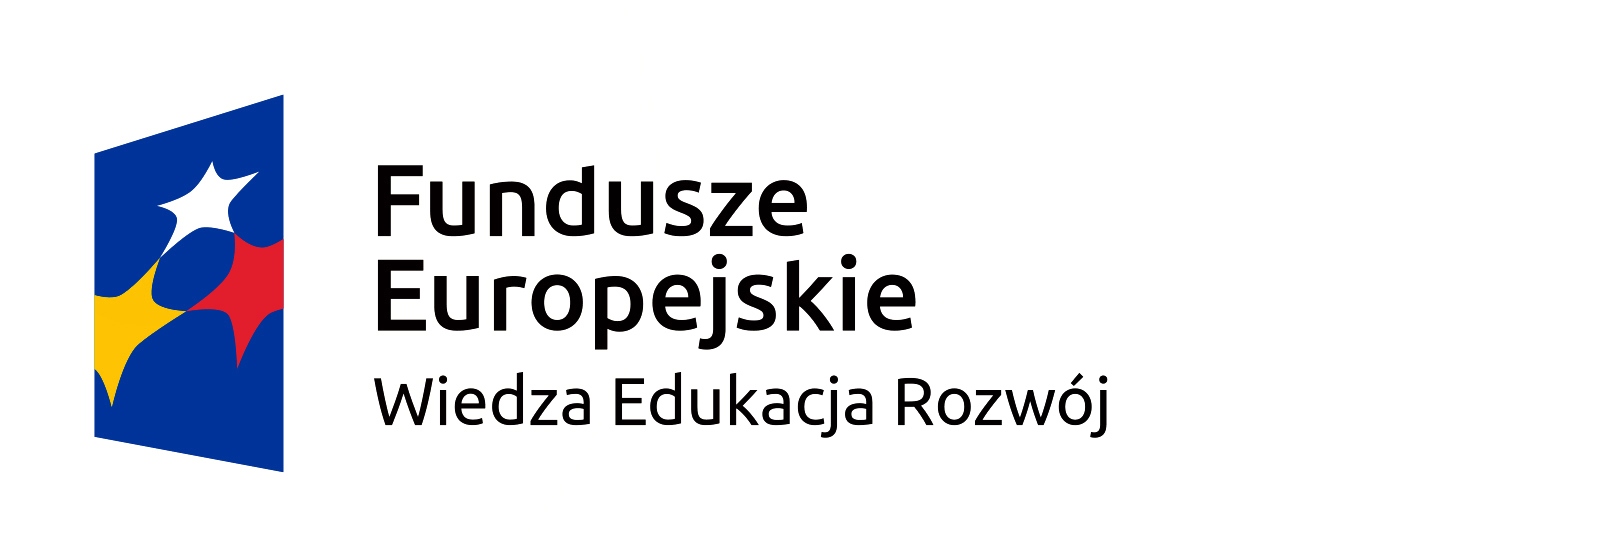 logo Fundusze Europejski Wiedza Edukacja Rozwój